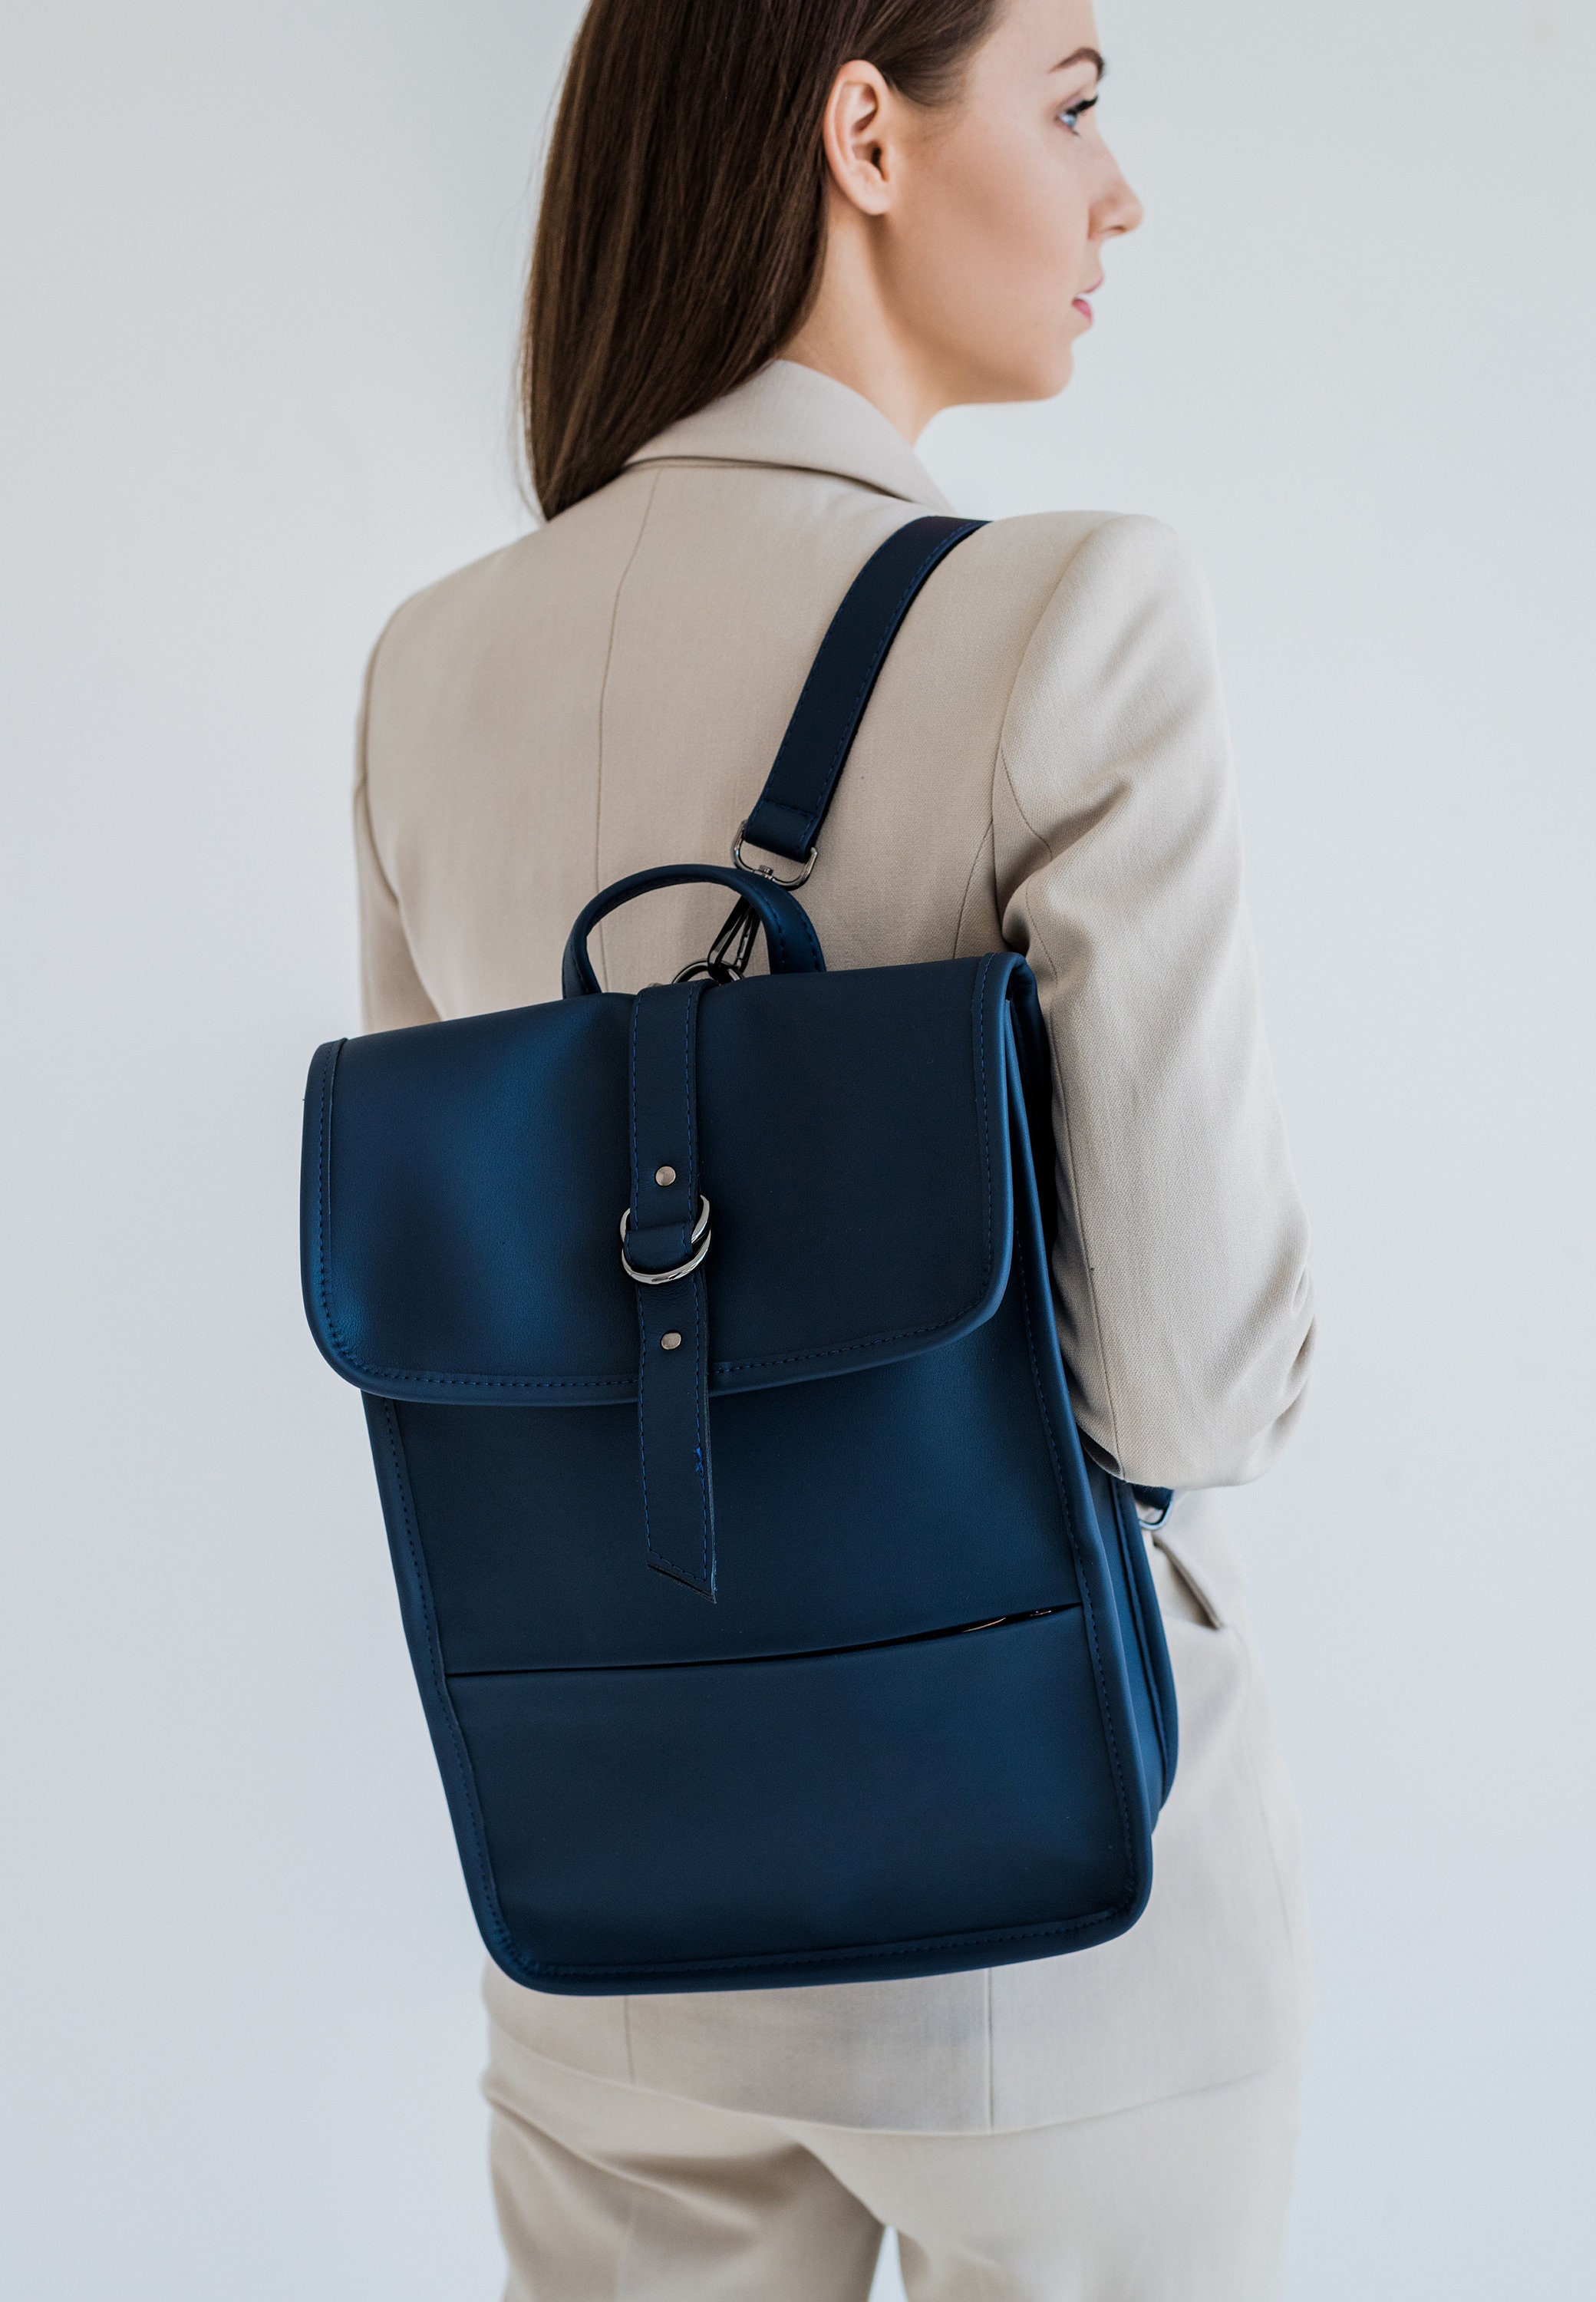 Laptop backpack Minimal style Stylish backpack Vegan | Etsy